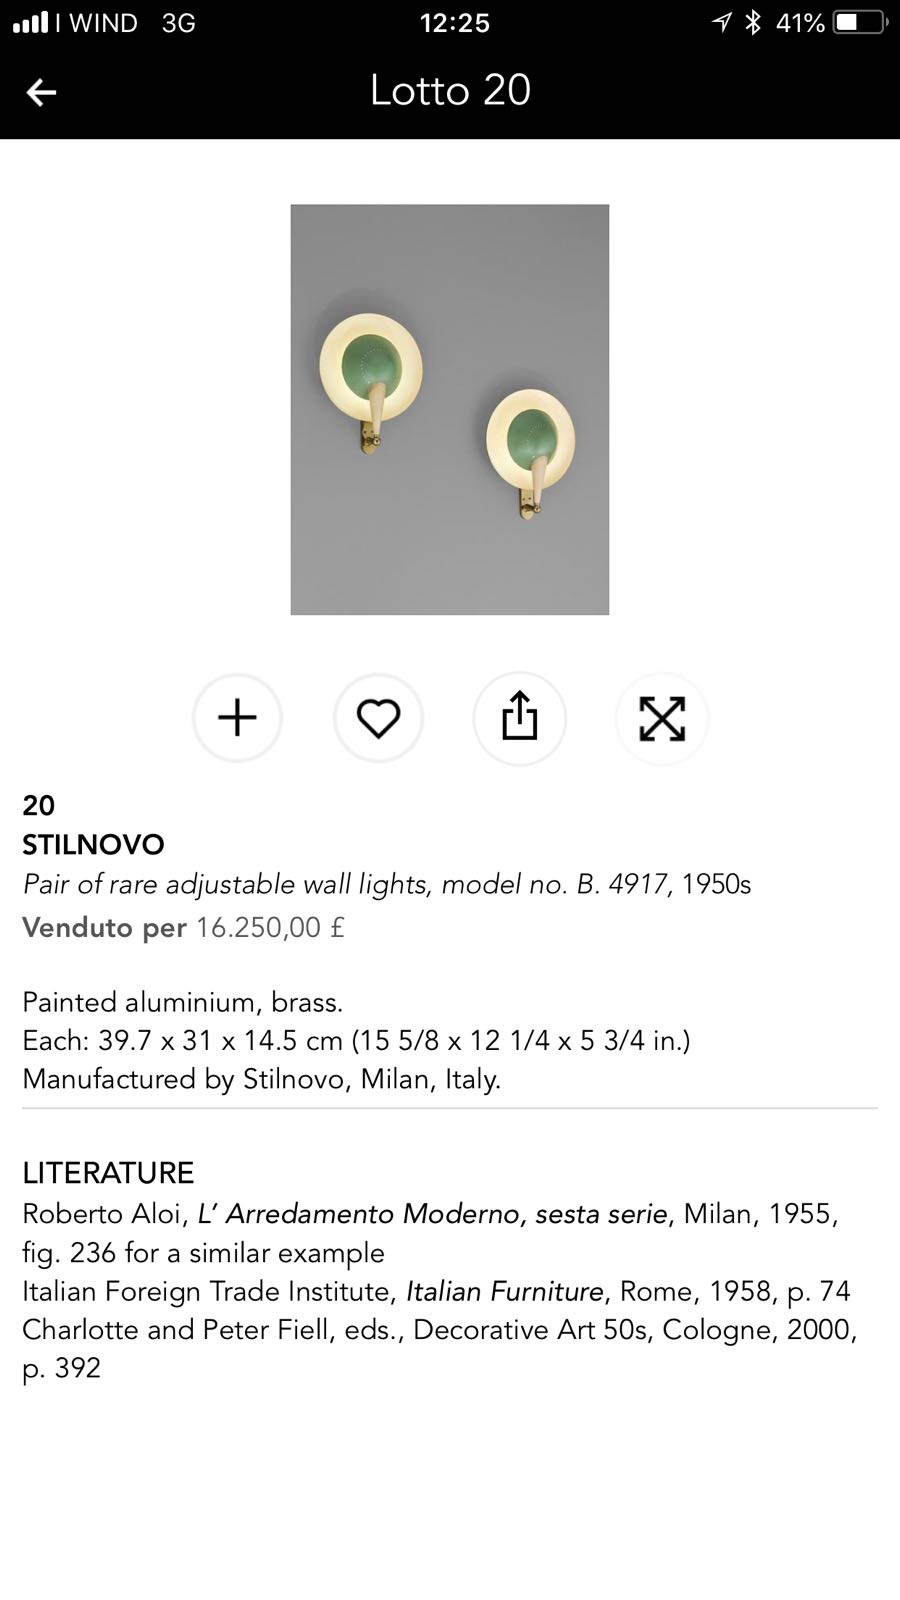 Applique Stilnovo b 4917 ottone metallo del XX Secolo Vintage. Opera originale e disponibile - Robertaebasta® Art Gallery opere d’arte esclusive.